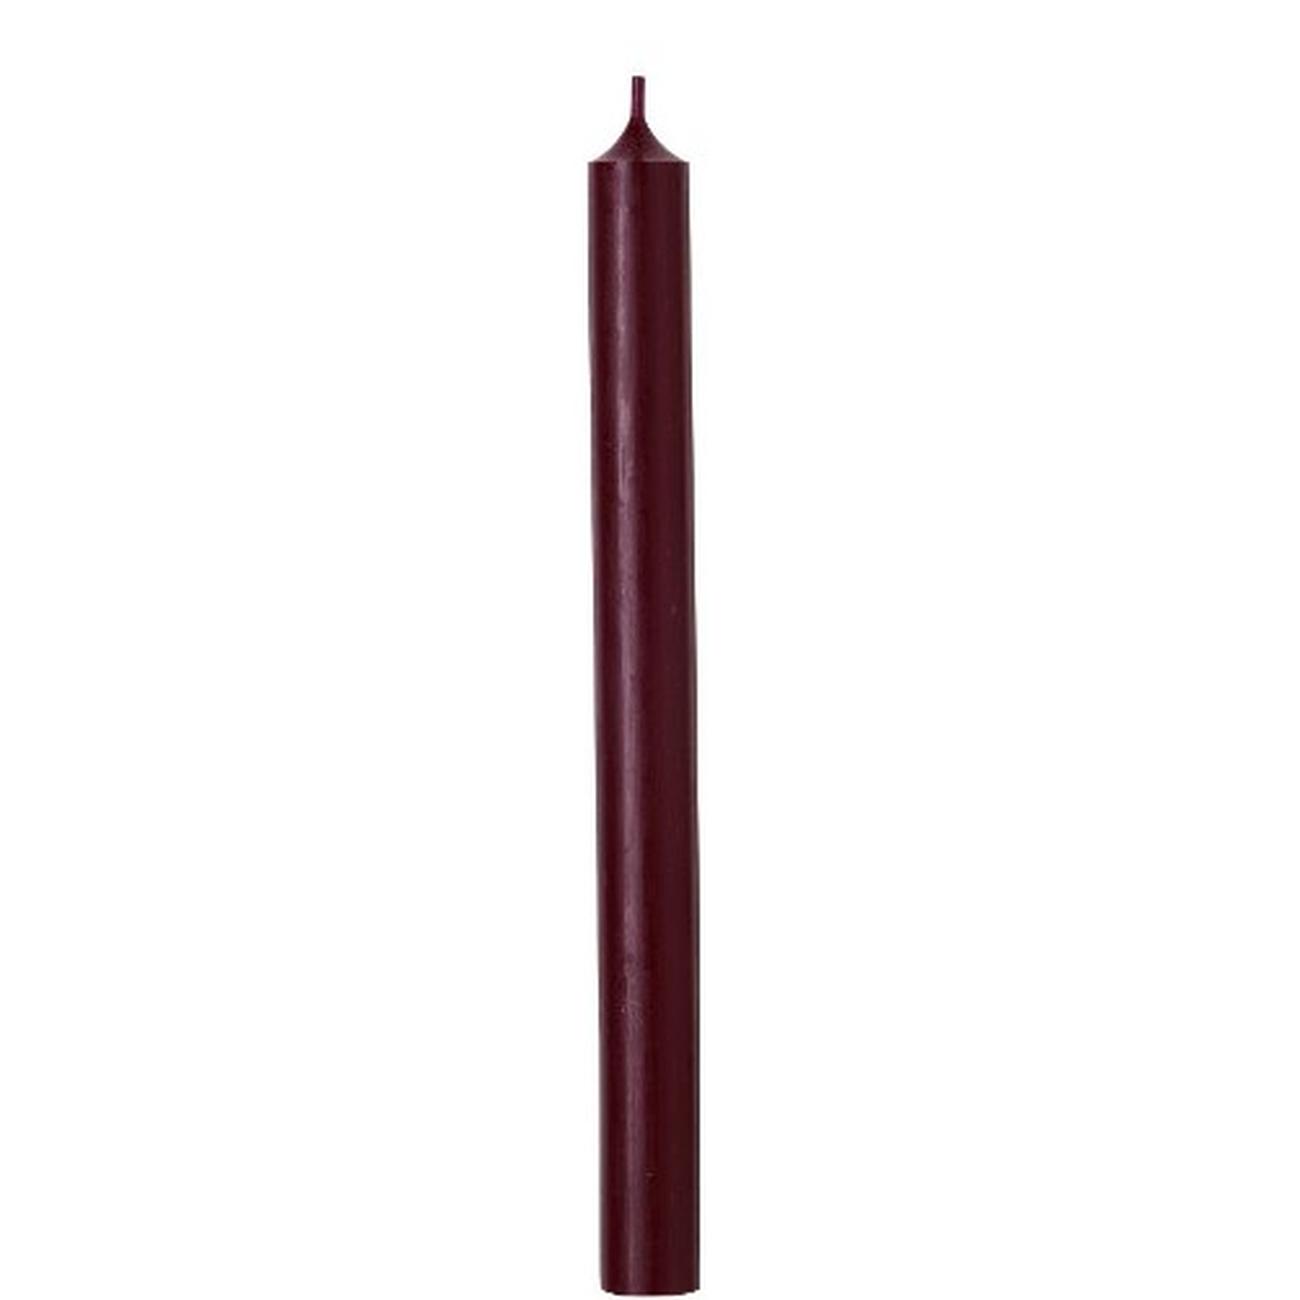 ihr-cylinder-candle-dark-red - IHR Cylinder Candle Dark Red